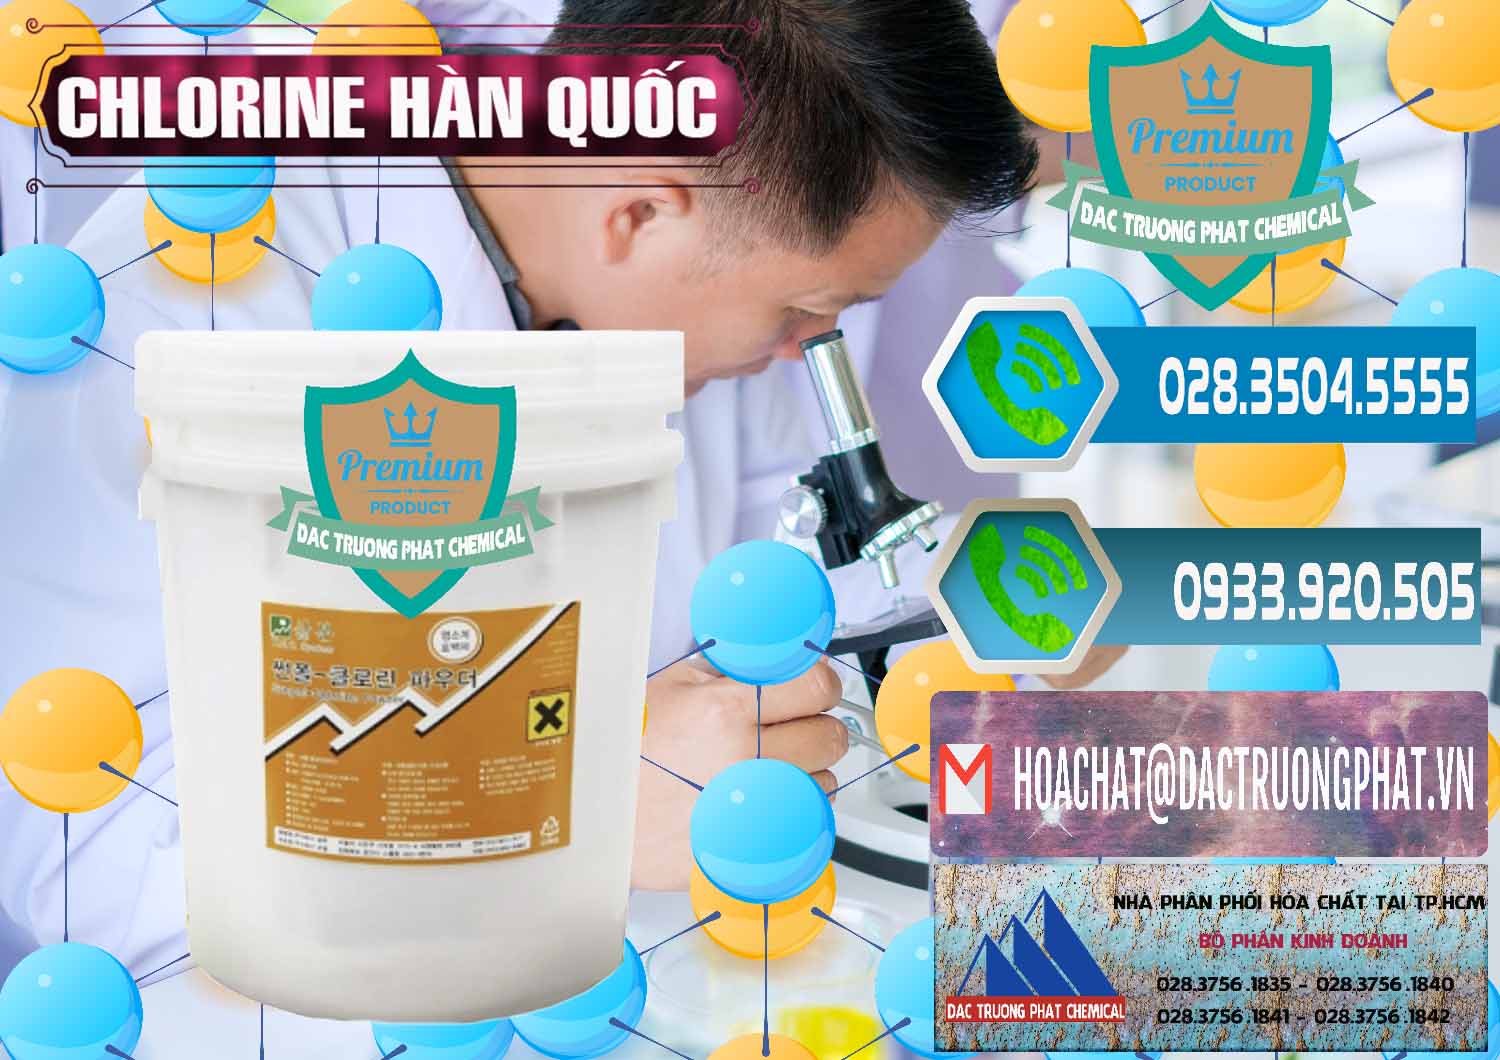 Nơi chuyên bán - cung cấp Chlorine – Clorin 70% Hàn Quốc Korea - 0345 - Nơi chuyên bán và phân phối hóa chất tại TP.HCM - congtyhoachat.net